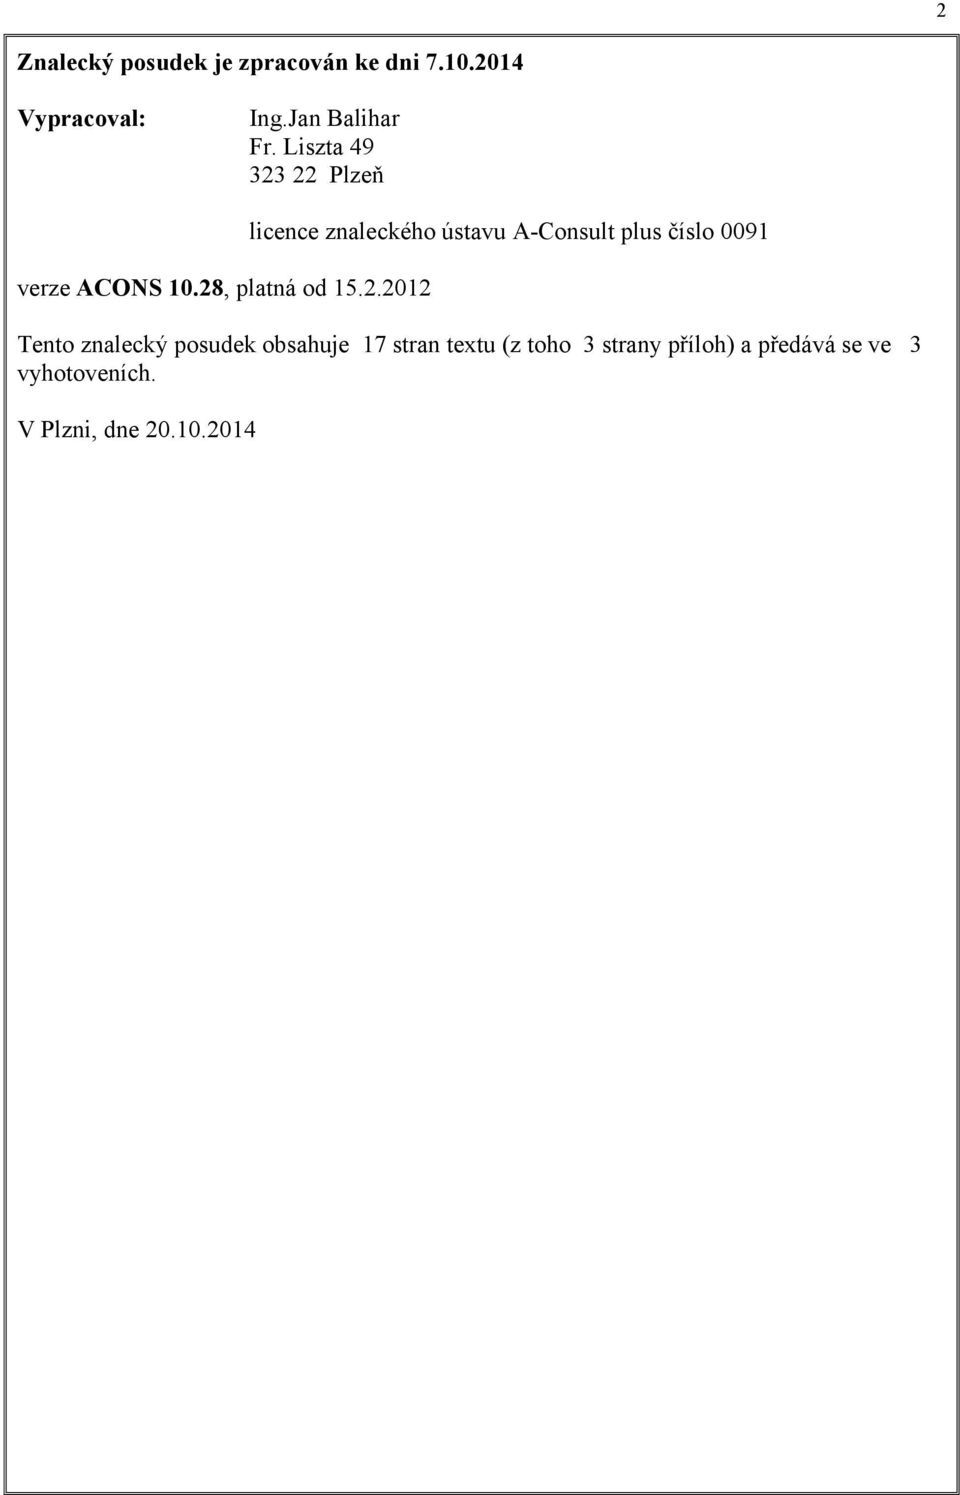 22 Plzeň verze ACONS 10.28, platná od 15.2.2012 licence znaleckého ústavu